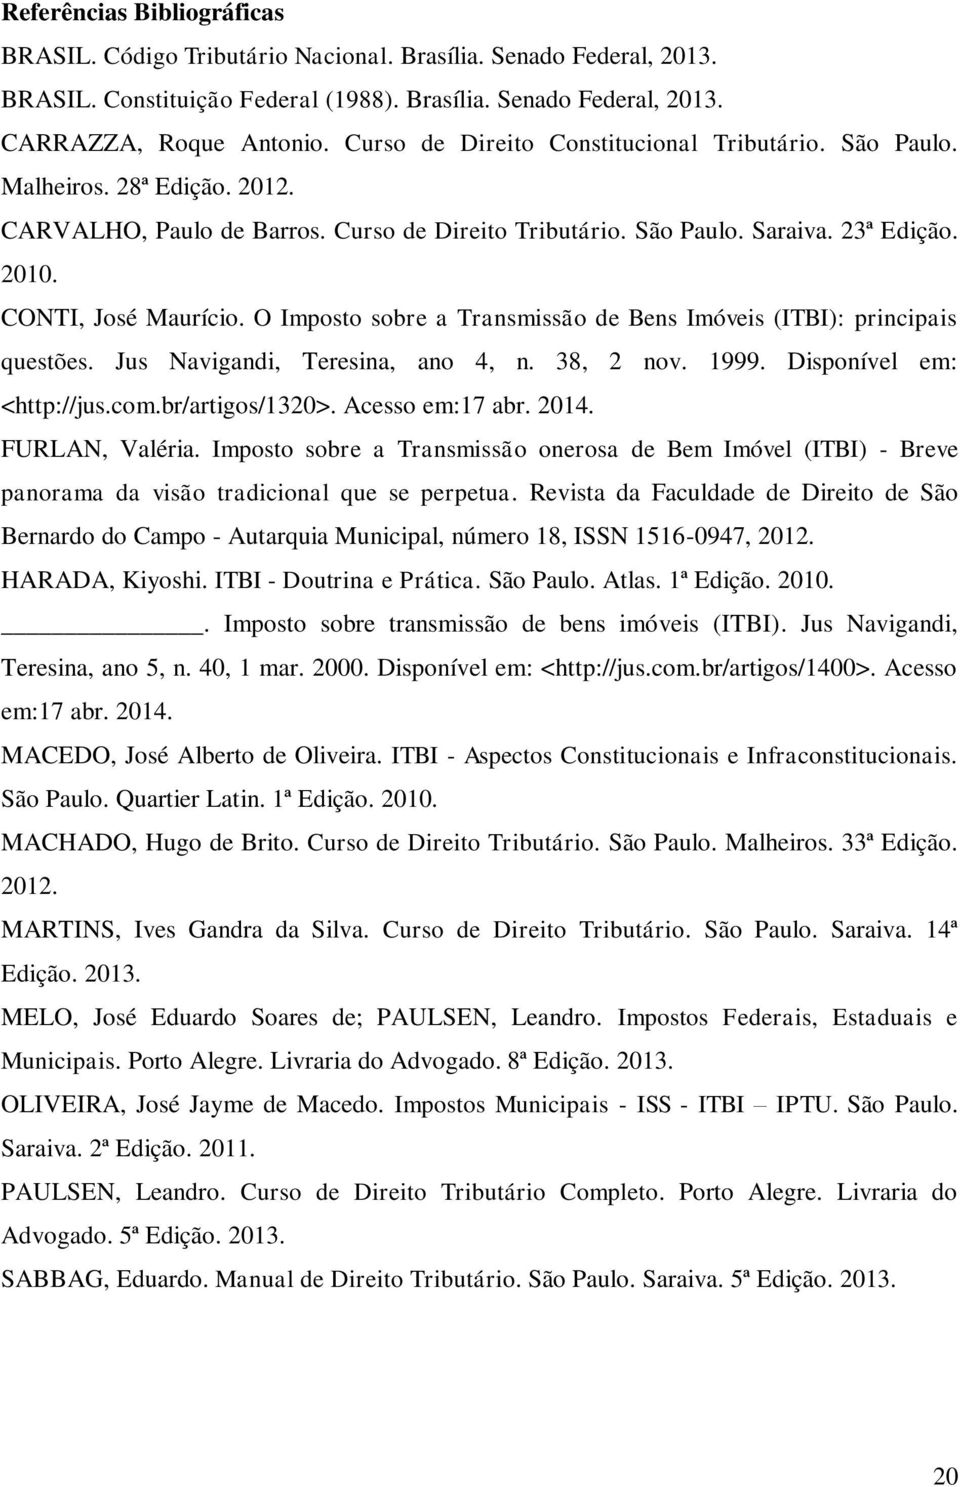 O Imposto sobre a Transmissão de Bens Imóveis (ITBI): principais questões. Jus Navigandi, Teresina, ano 4, n. 38, 2 nov. 1999. Disponível em: <http://jus.com.br/artigos/1320>. Acesso em:17 abr. 2014.